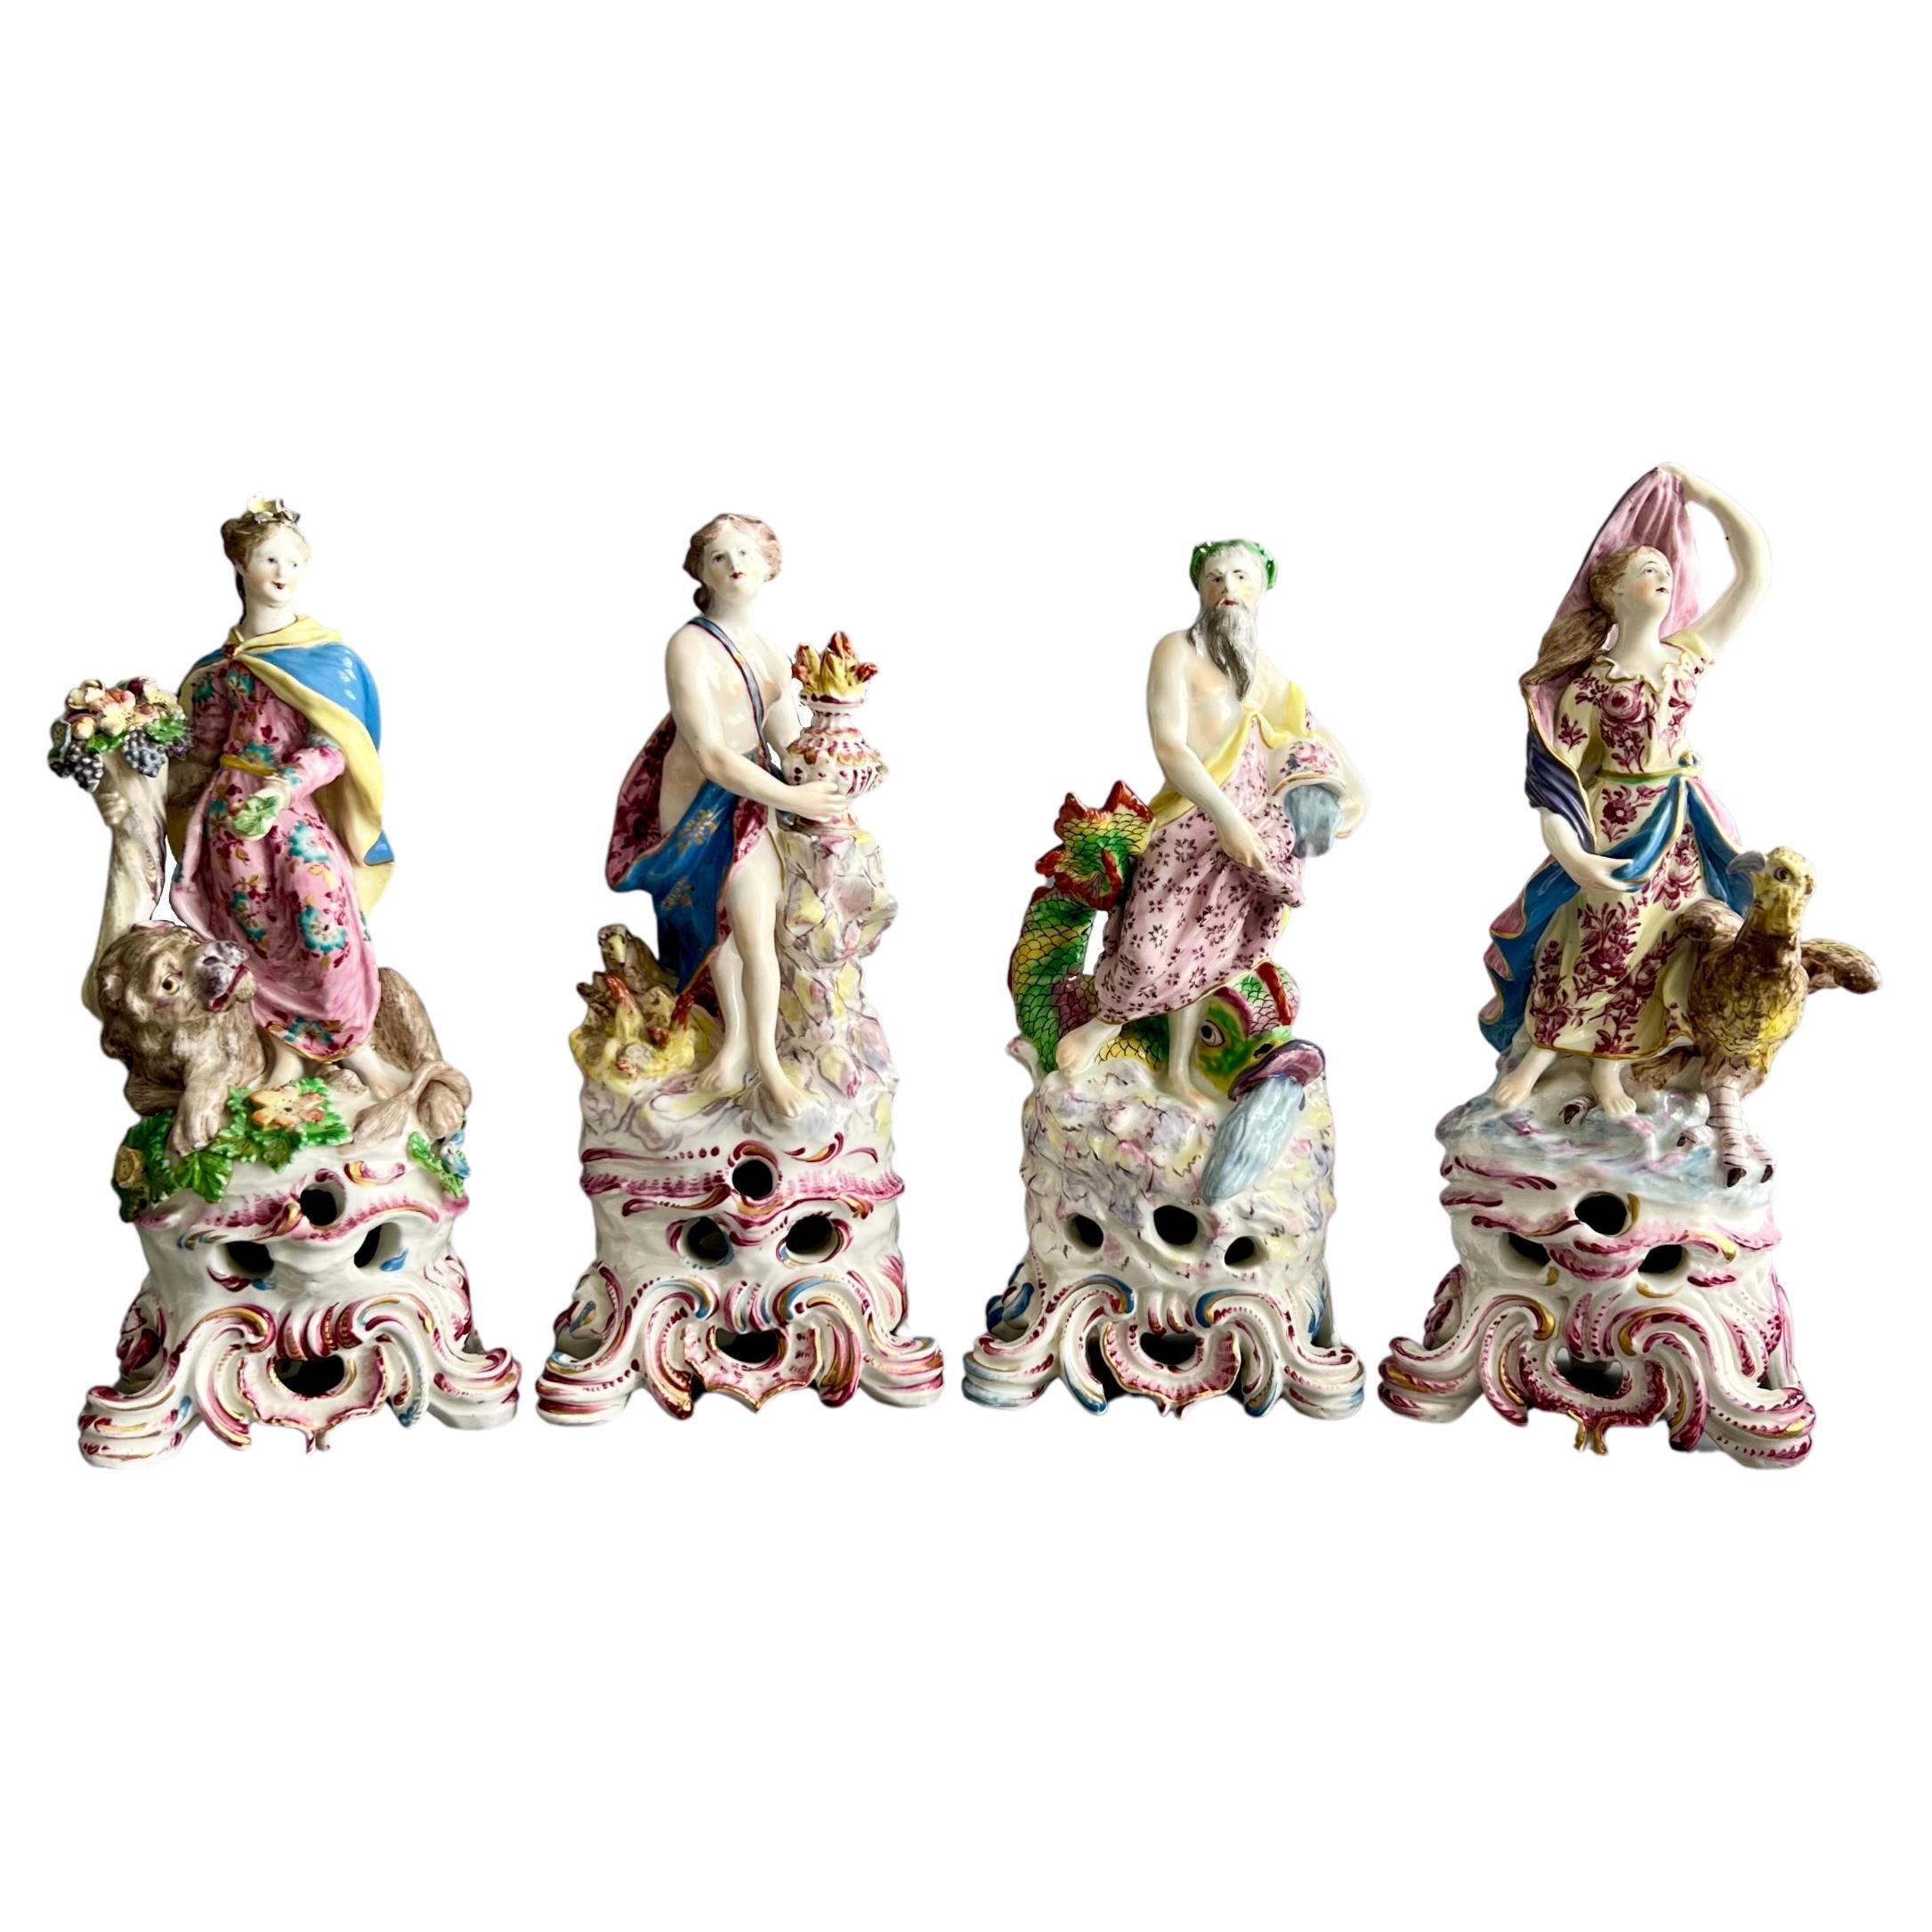 Ensemble complet de figurines en porcelaine « Les quatre éléments », Rococo, datant d'environ 1765